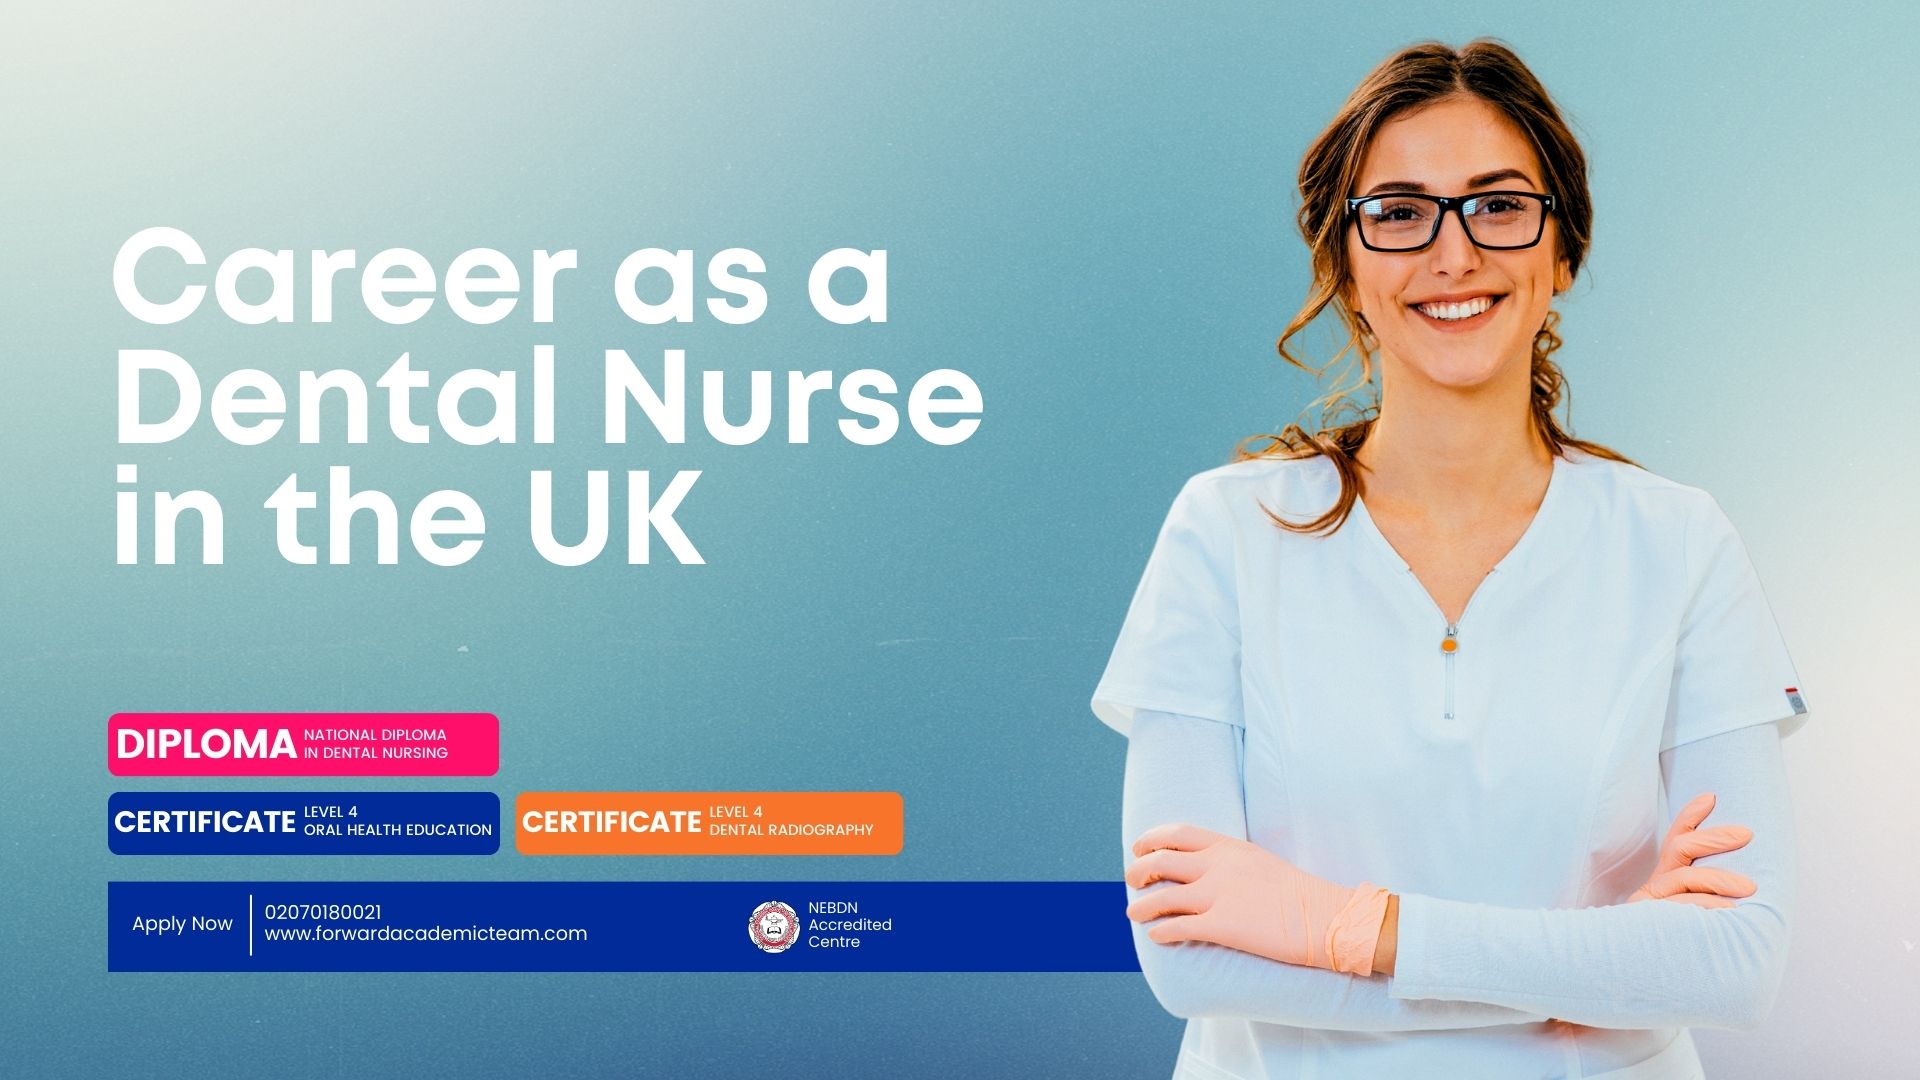 Career as a Dental Nurse in the UK